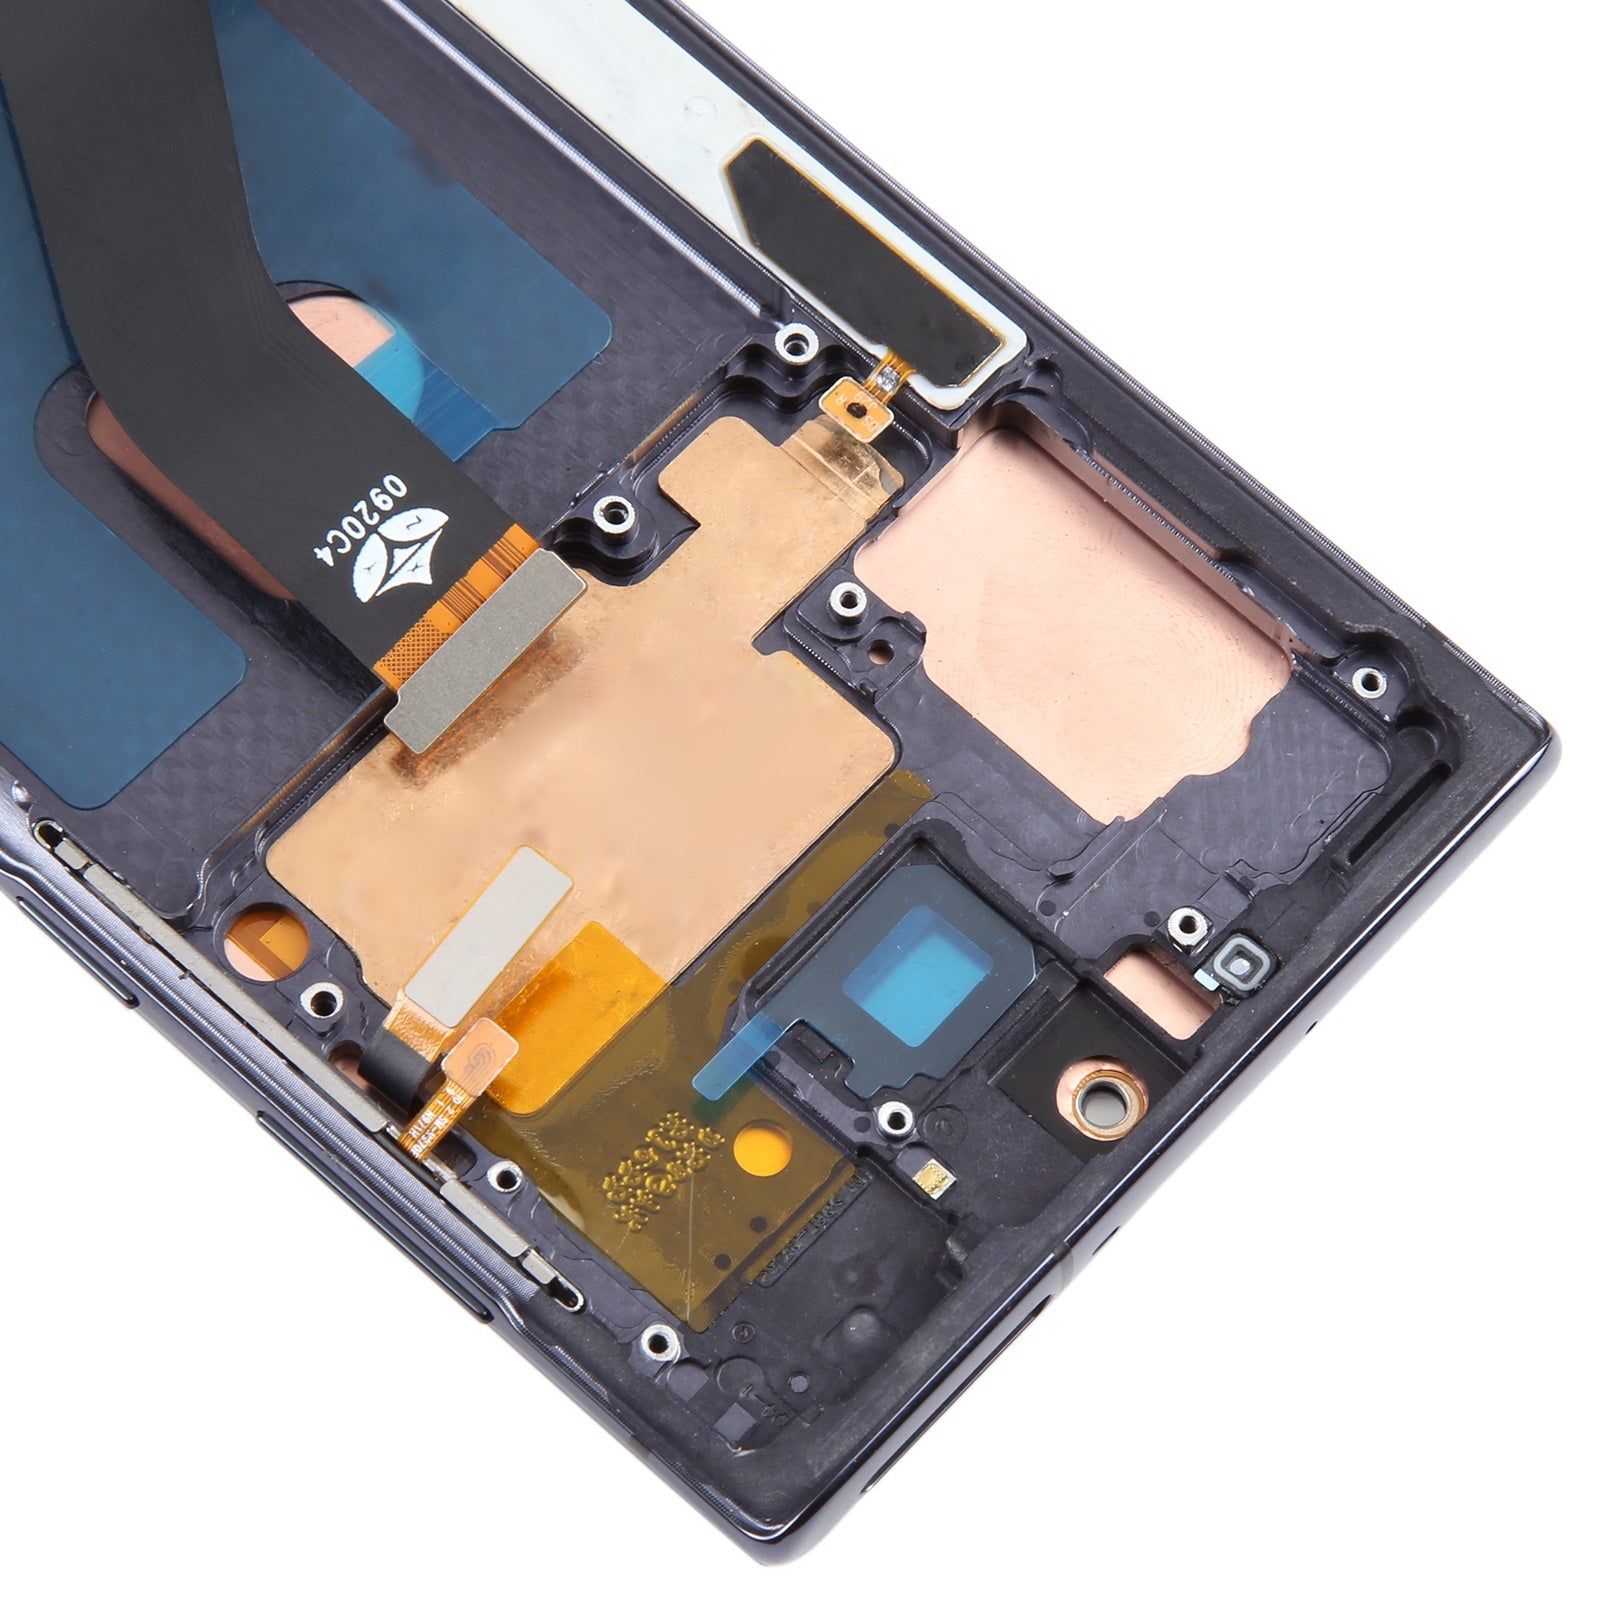 Pantalla Completa + Tactil + Marco Samsung Galaxy Note 10 N970 Negro